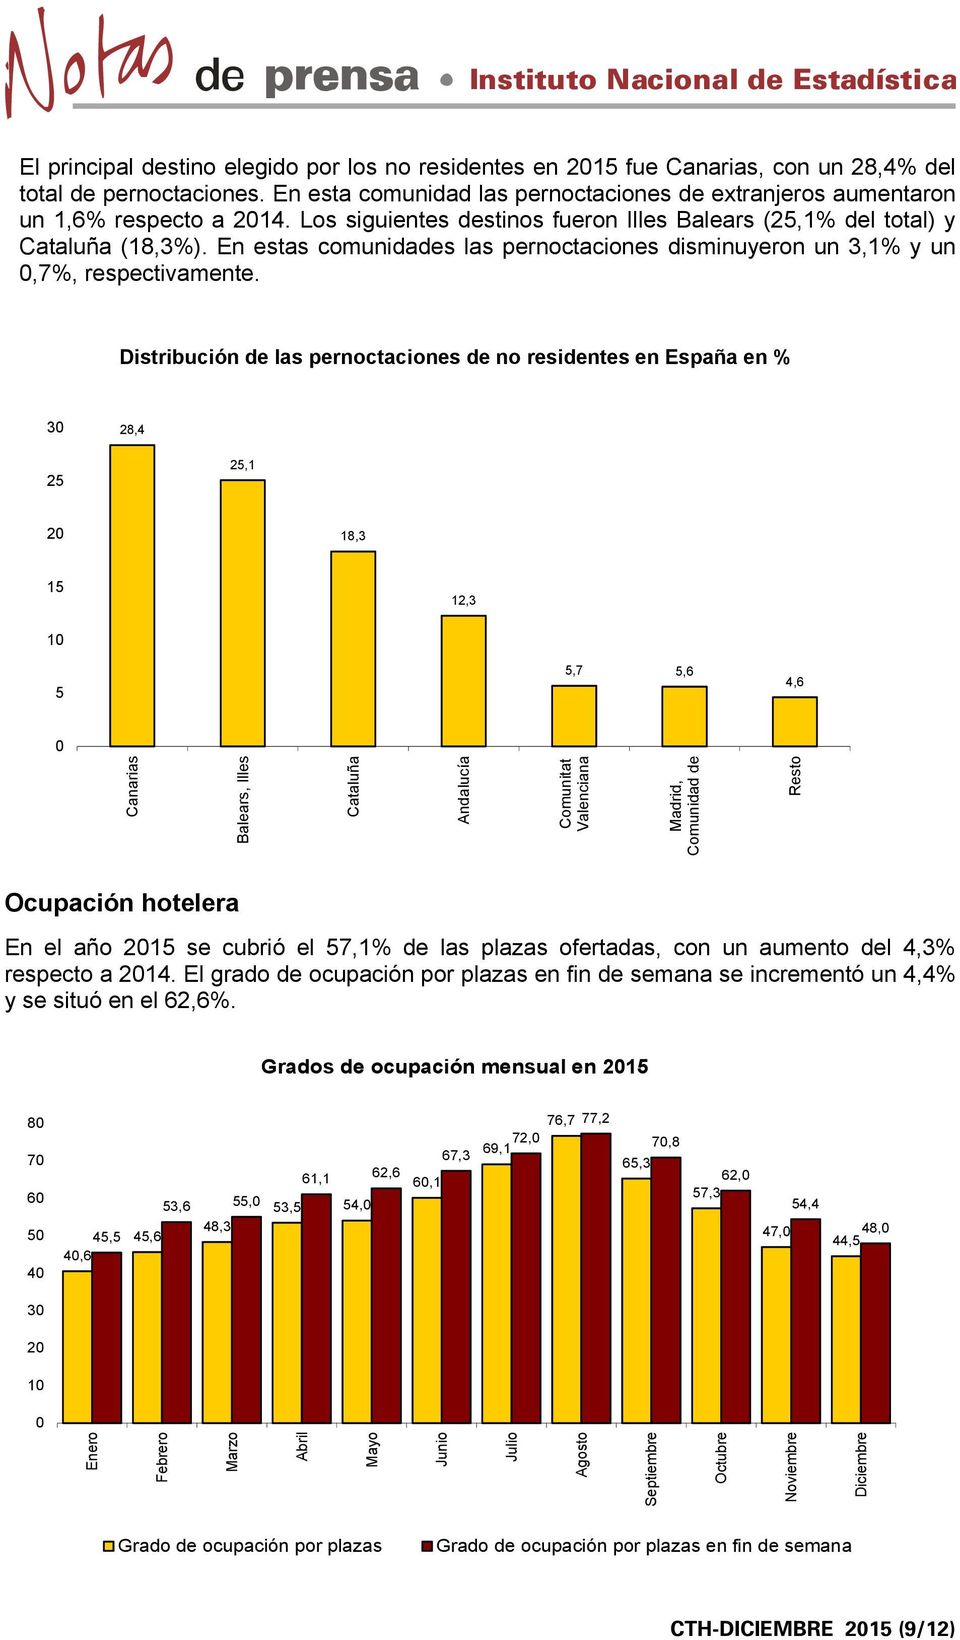 Distribución de las pernoctaciones de no residentes en España en % 3 28,4 25 25,1 2 18,3 15 12,3 1 5 5,7 5,6 4,6 Canarias Balears, Illes Cataluña Andalucía Comunitat Valenciana Madrid, Comunidad de